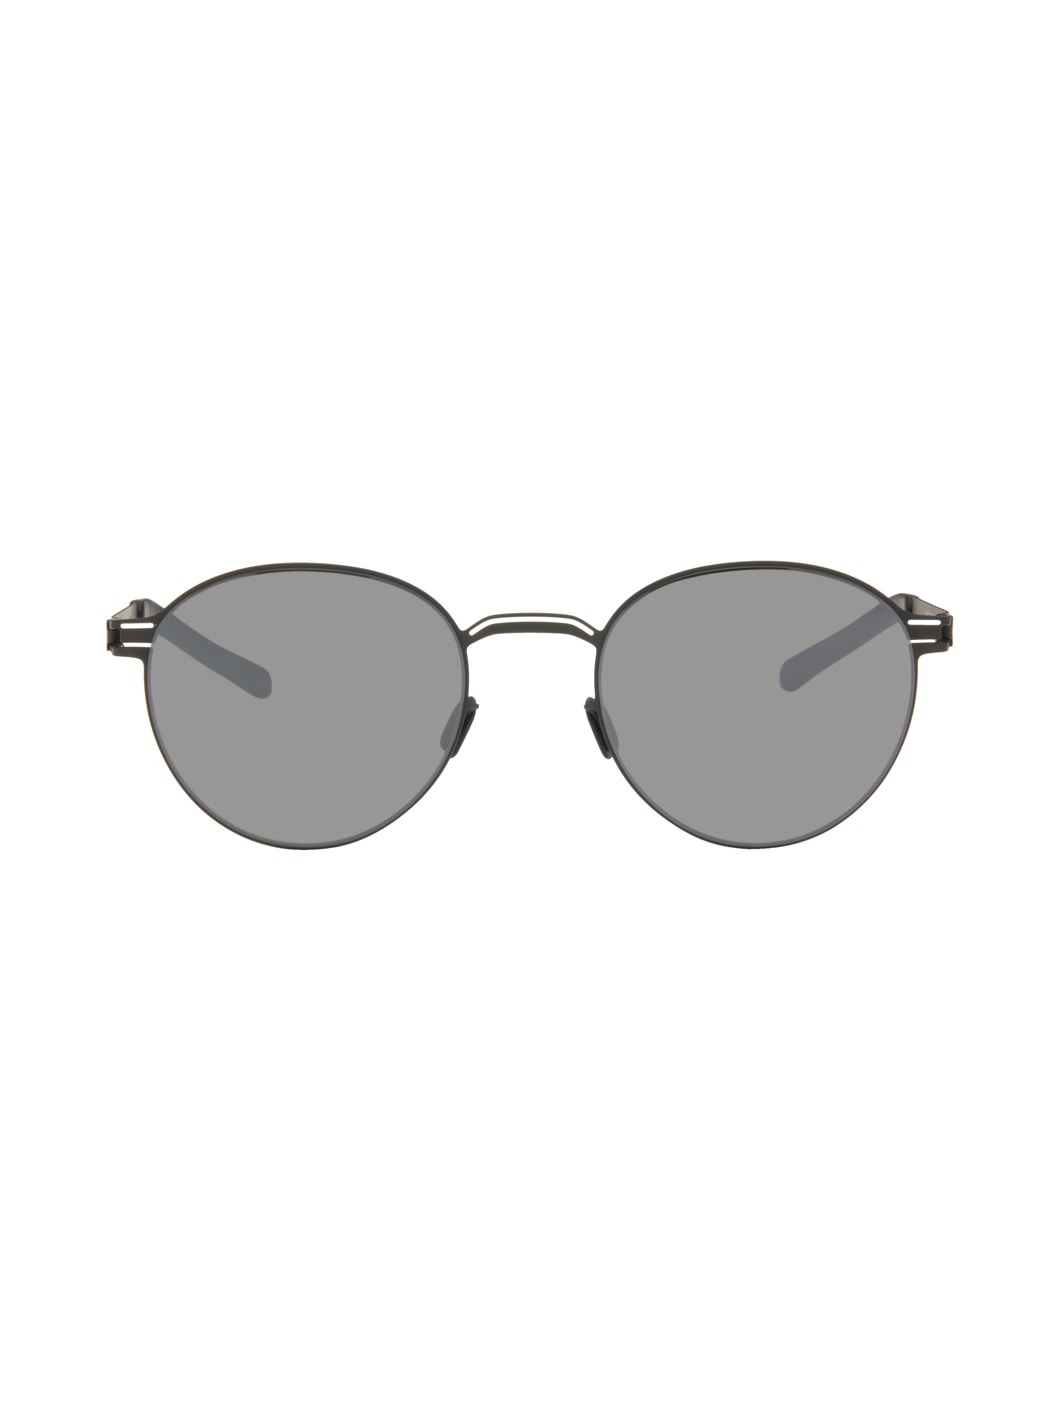 Black Carlo Sunglasses - 1